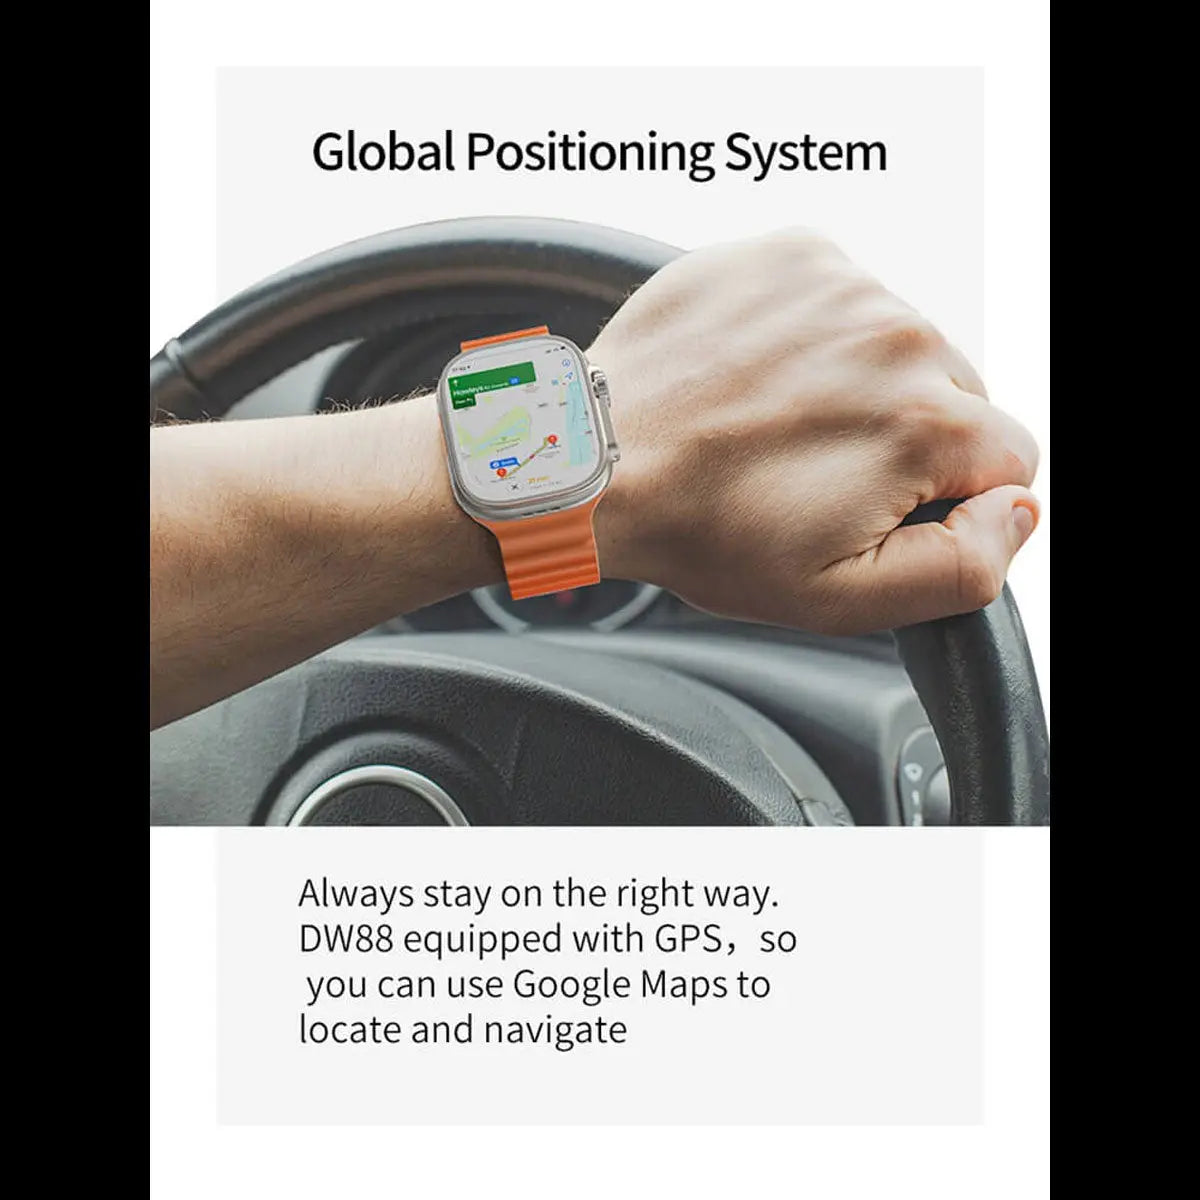 Reloj Smartwatch Dw88 4g Wifi Android 8.1 1gb Ram 16gb Rom Fralugio